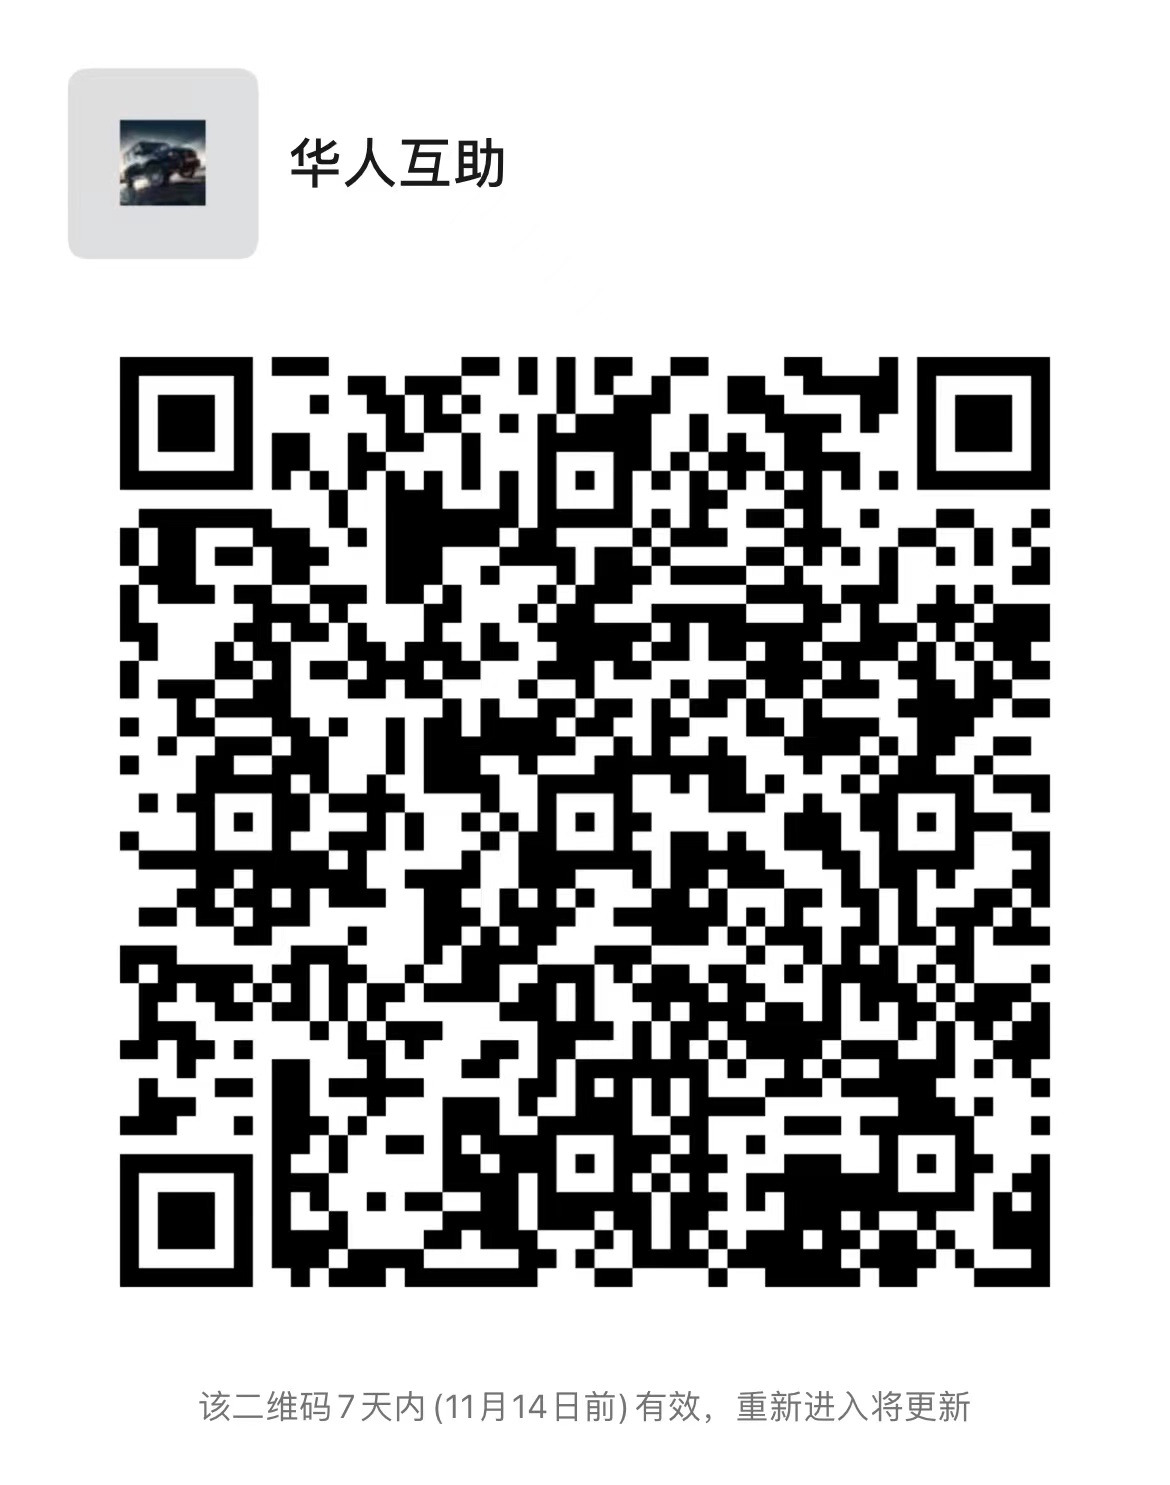 美国华人互助群 群主微信二维码